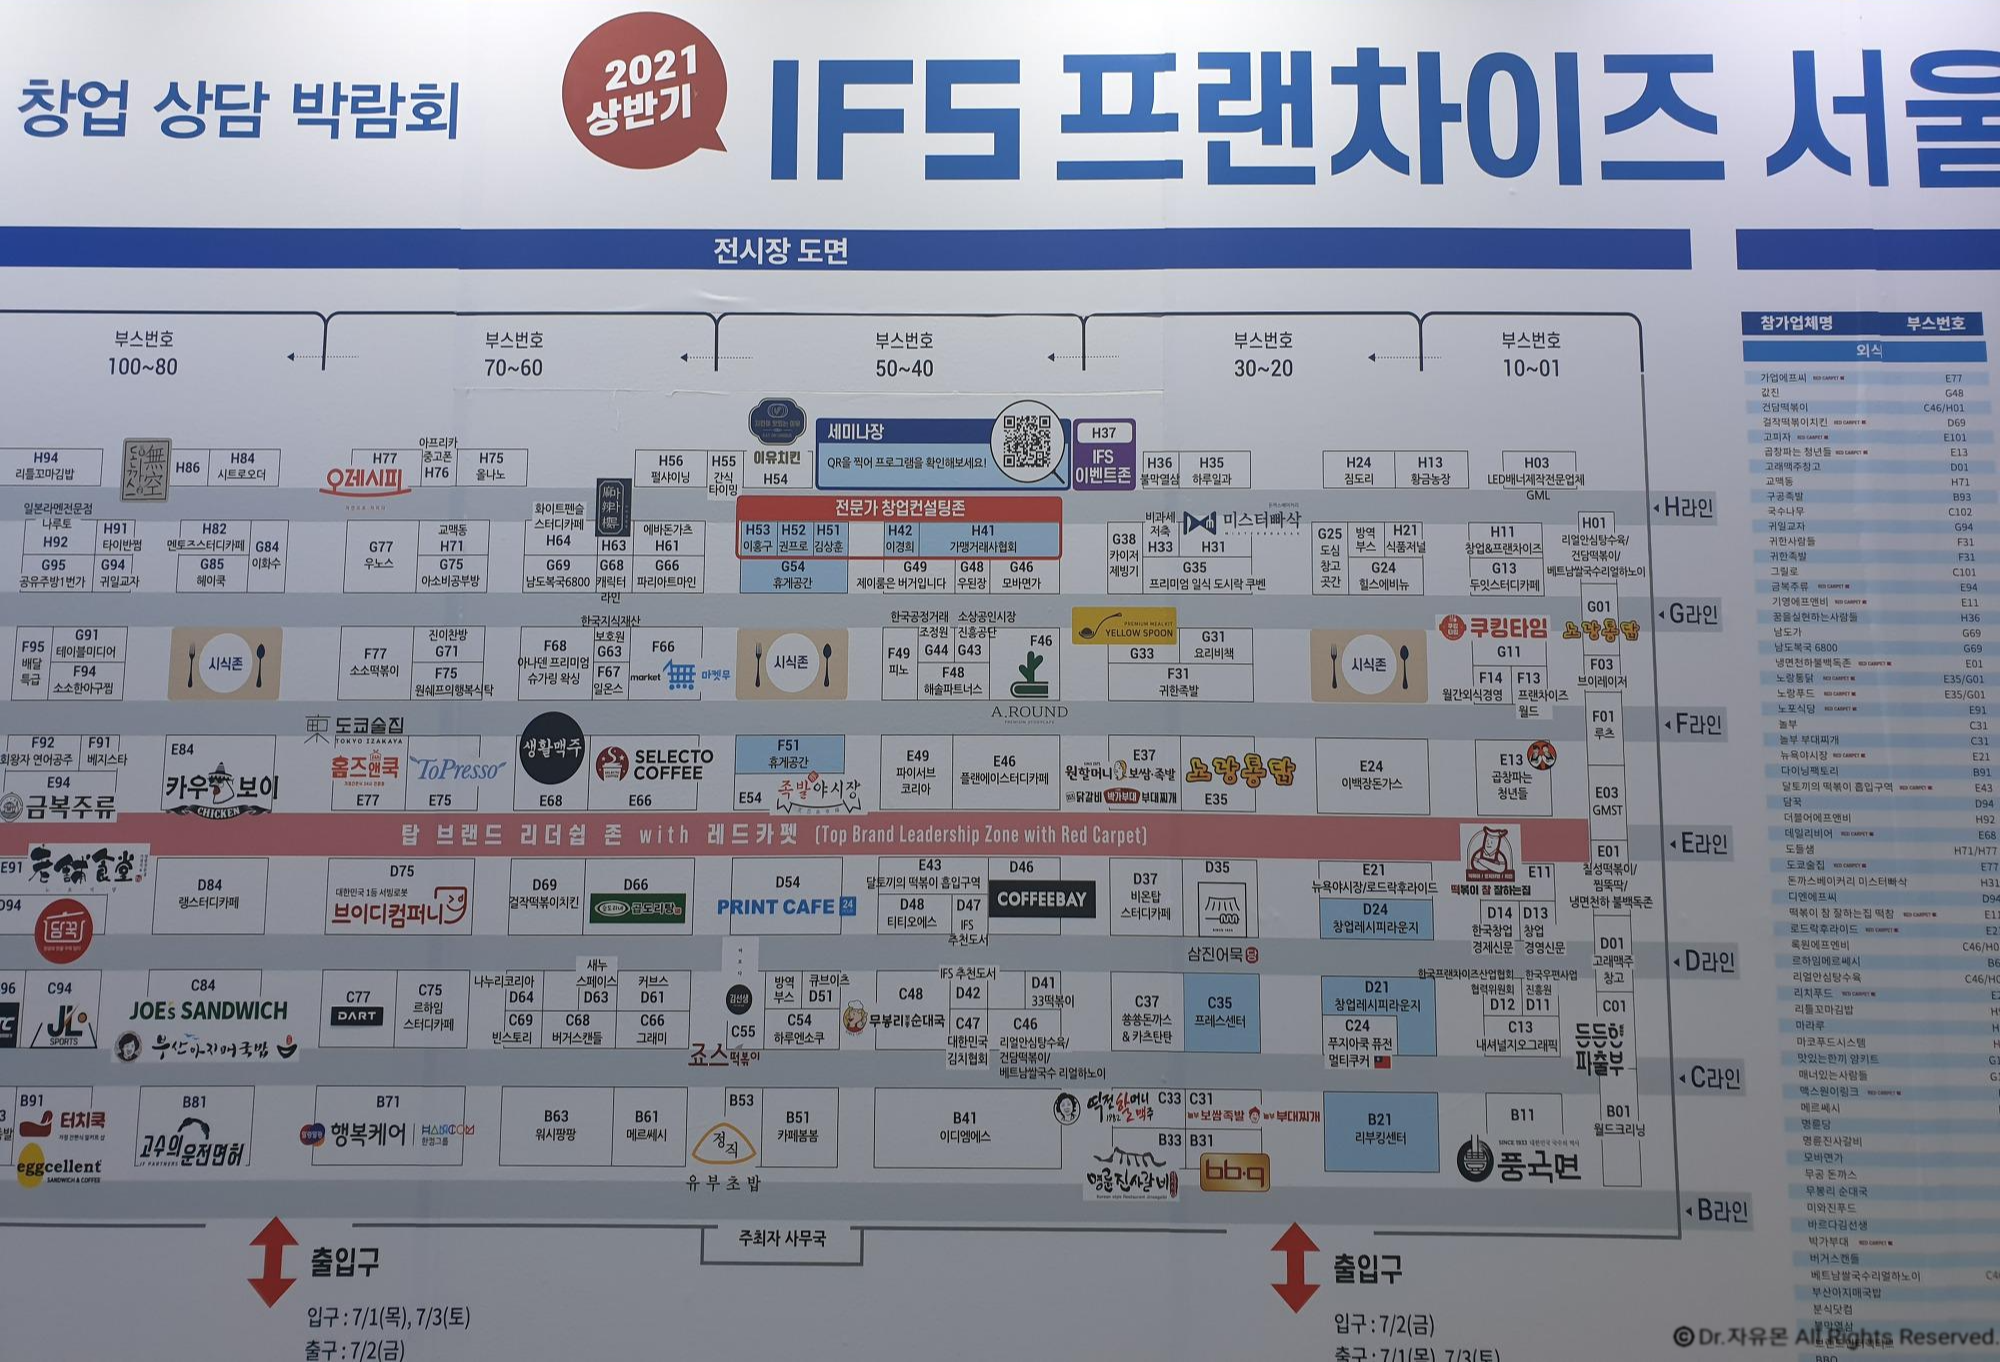 2021 IFS 프랜차이즈 창업박람회 상반기 참여 업체